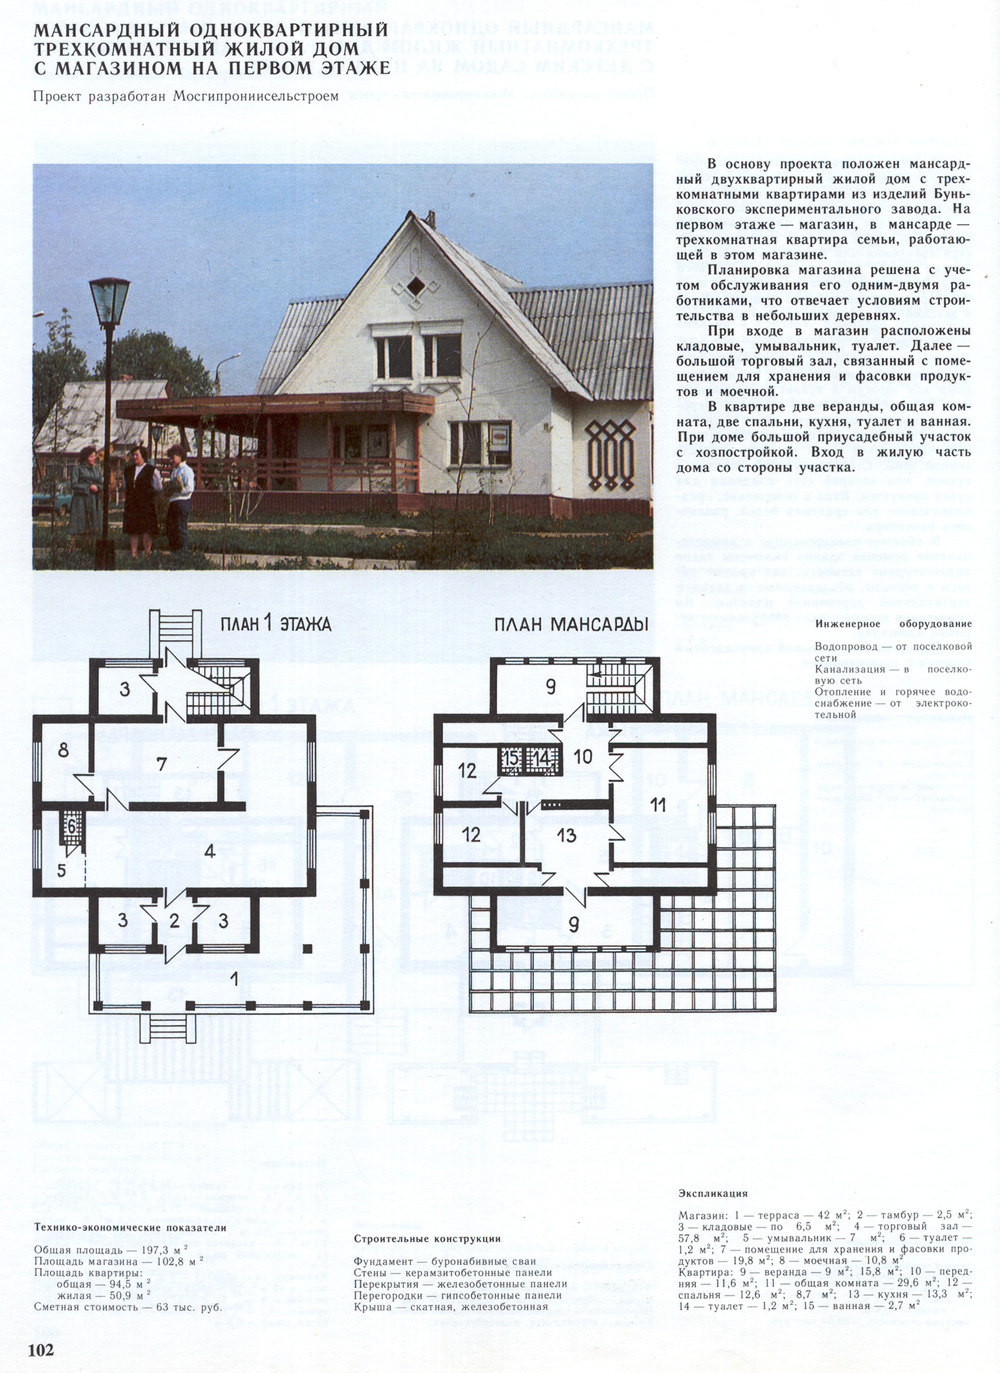 Project Мансардный одноквартирный трёхкомнатный жилой дом с магазином на первом этаже (проект МосгипроНИИсельстроя) — Drawings and Plans